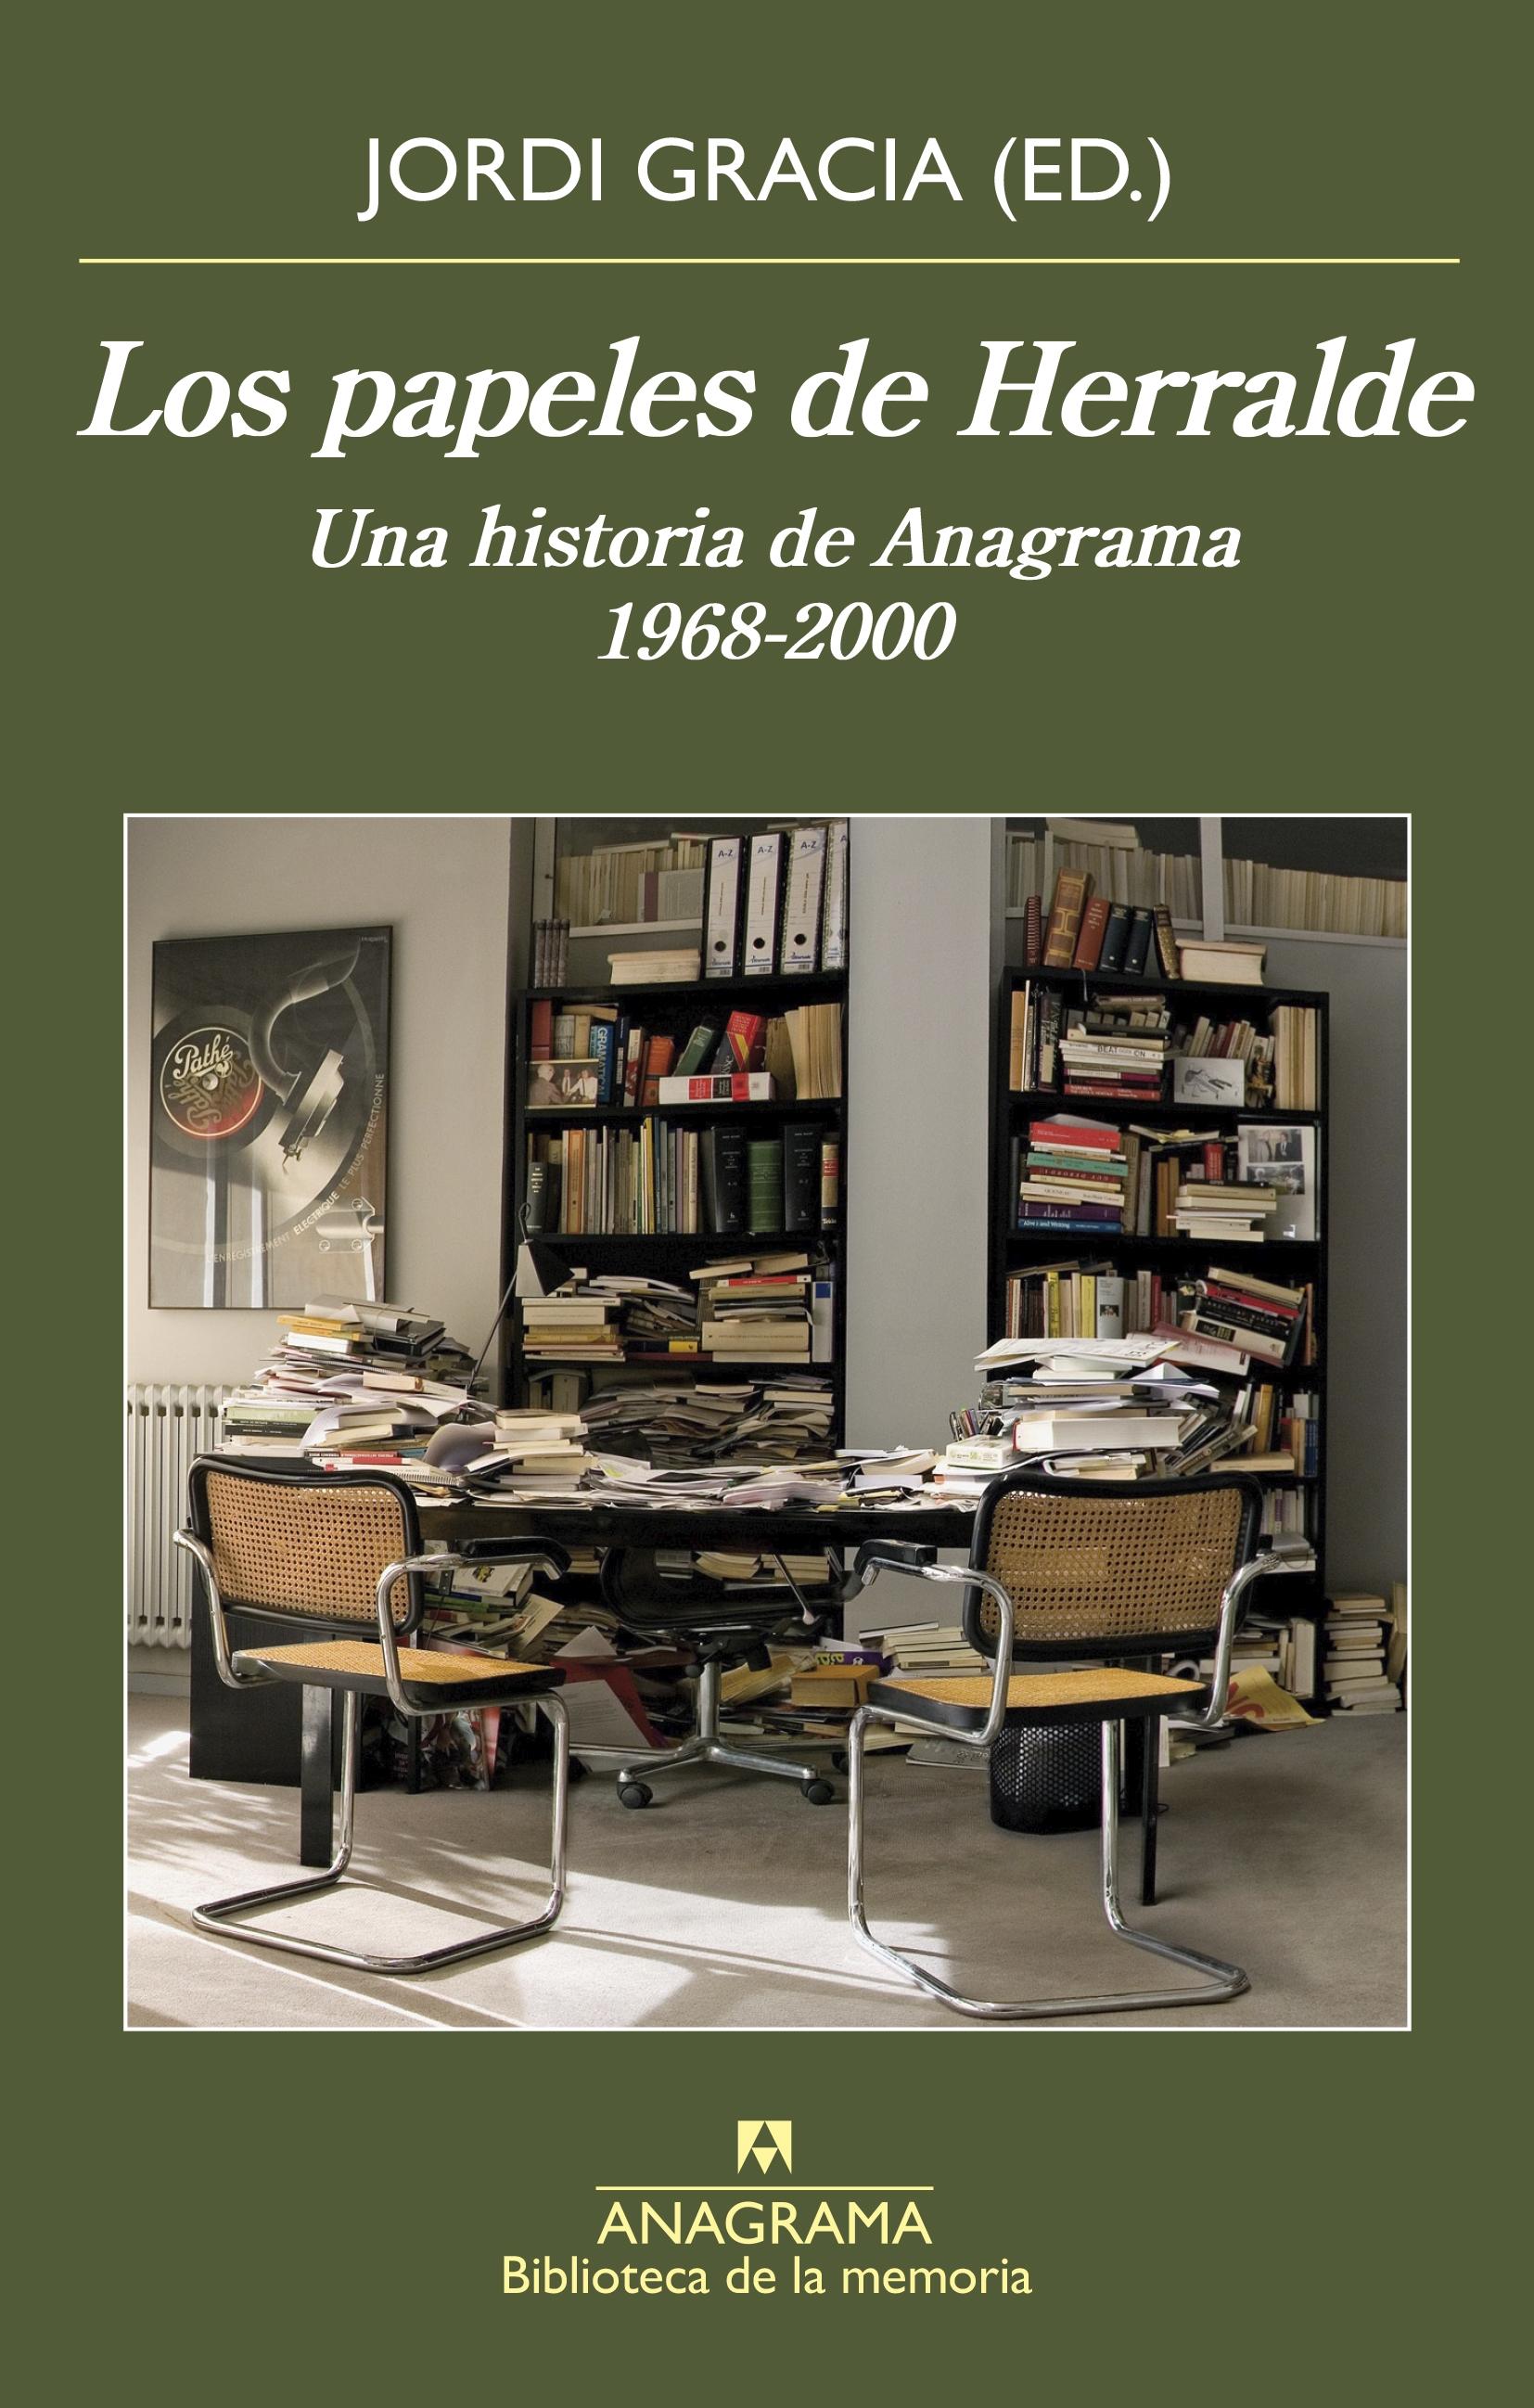 Los papeles de Herralde "Una historia de Anagrama, 1968-2000"